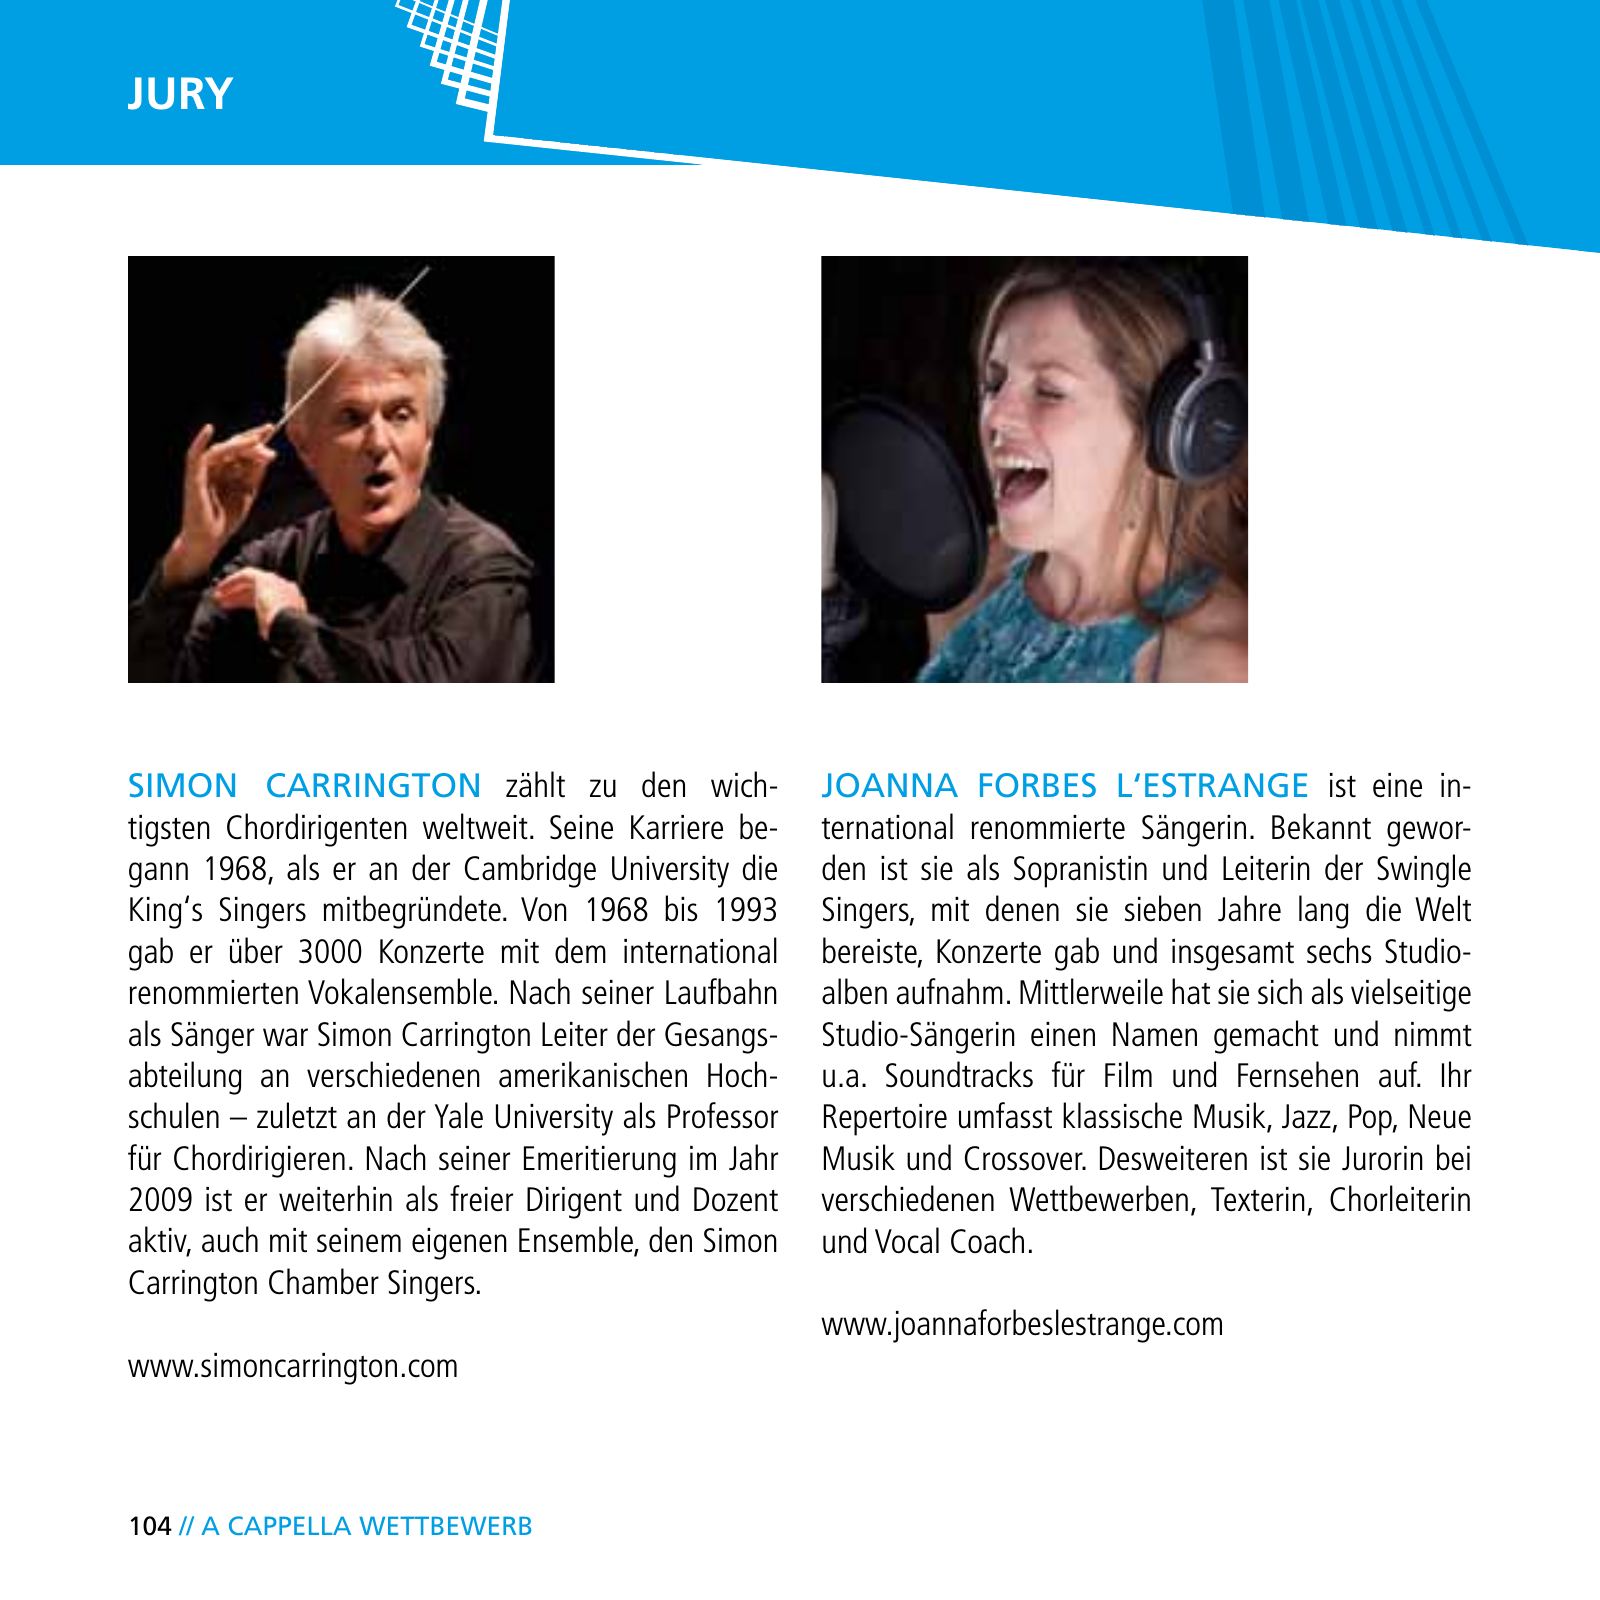 Vorschau E-Paper Festival a cappella 2015 Seite 106